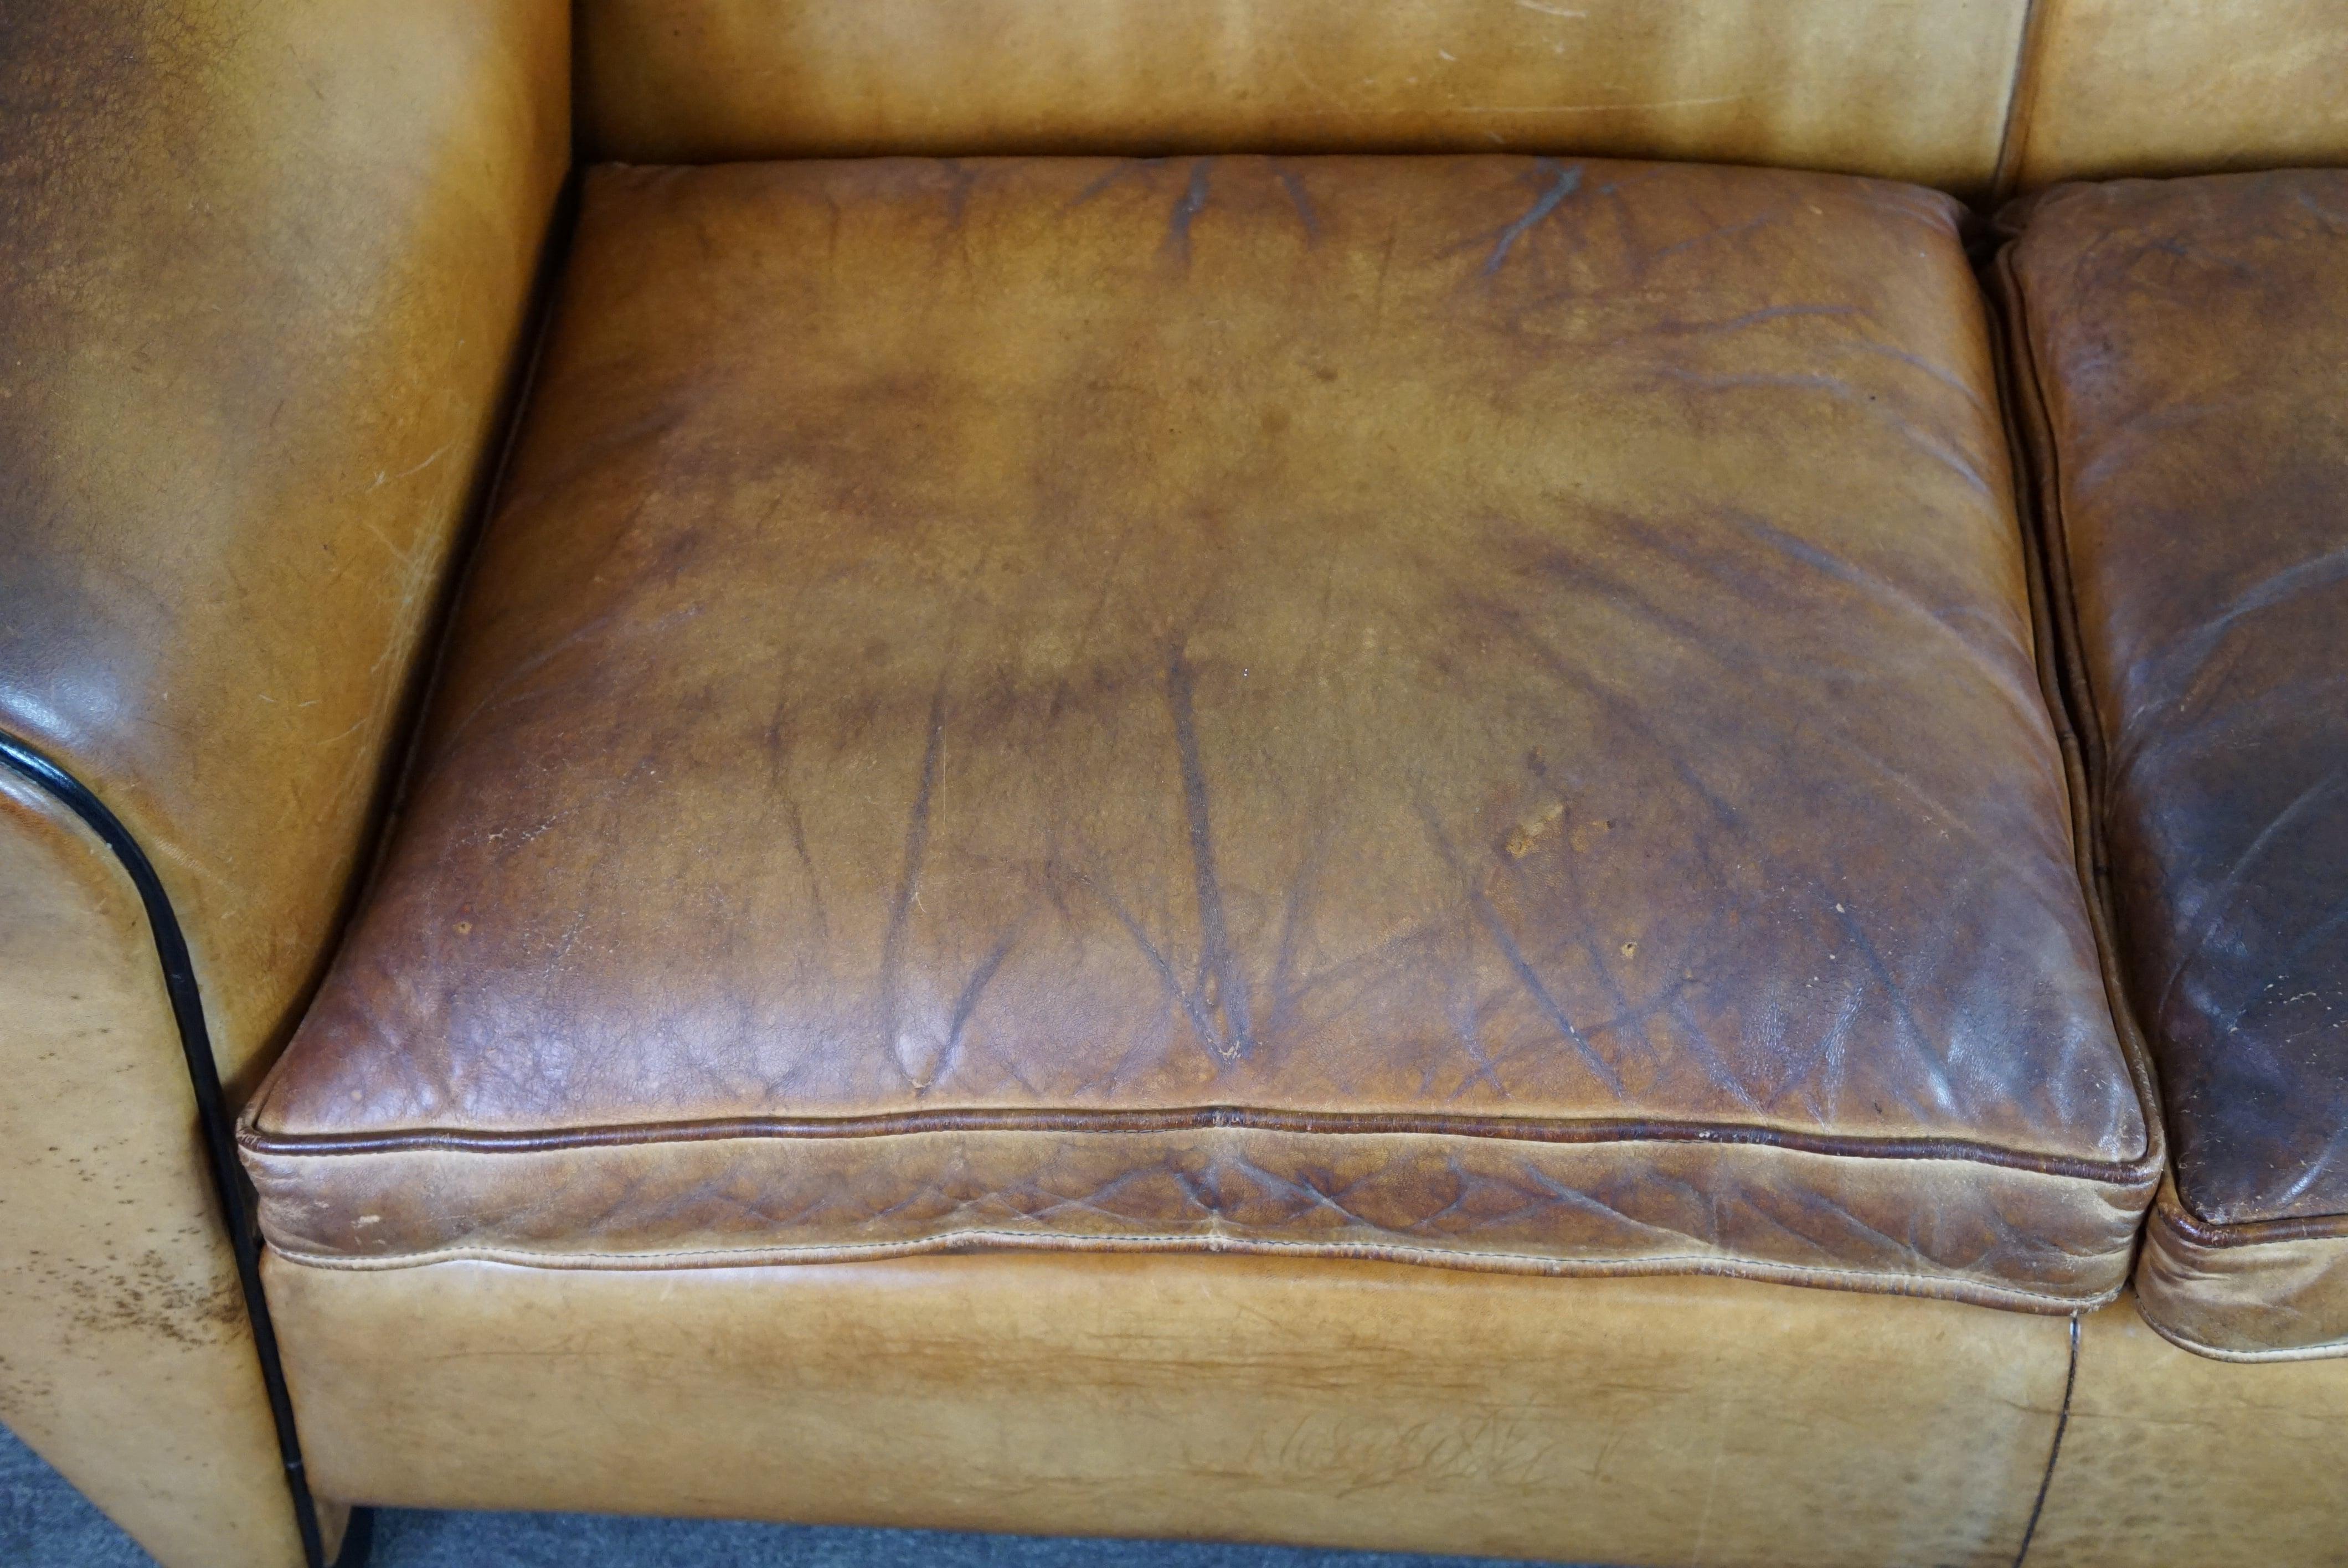 Dieses fantastische Bart van Bekhoven 2-Sitzer Design-Sofa aus Schafsleder in einer schönen hellen Honigfarbe wird von ByThijs angeboten und spricht für sich selbst. 

Zu diesem 2-sitzigen Design-Sofa von Bart van Bekhoven gibt es nicht viel zu